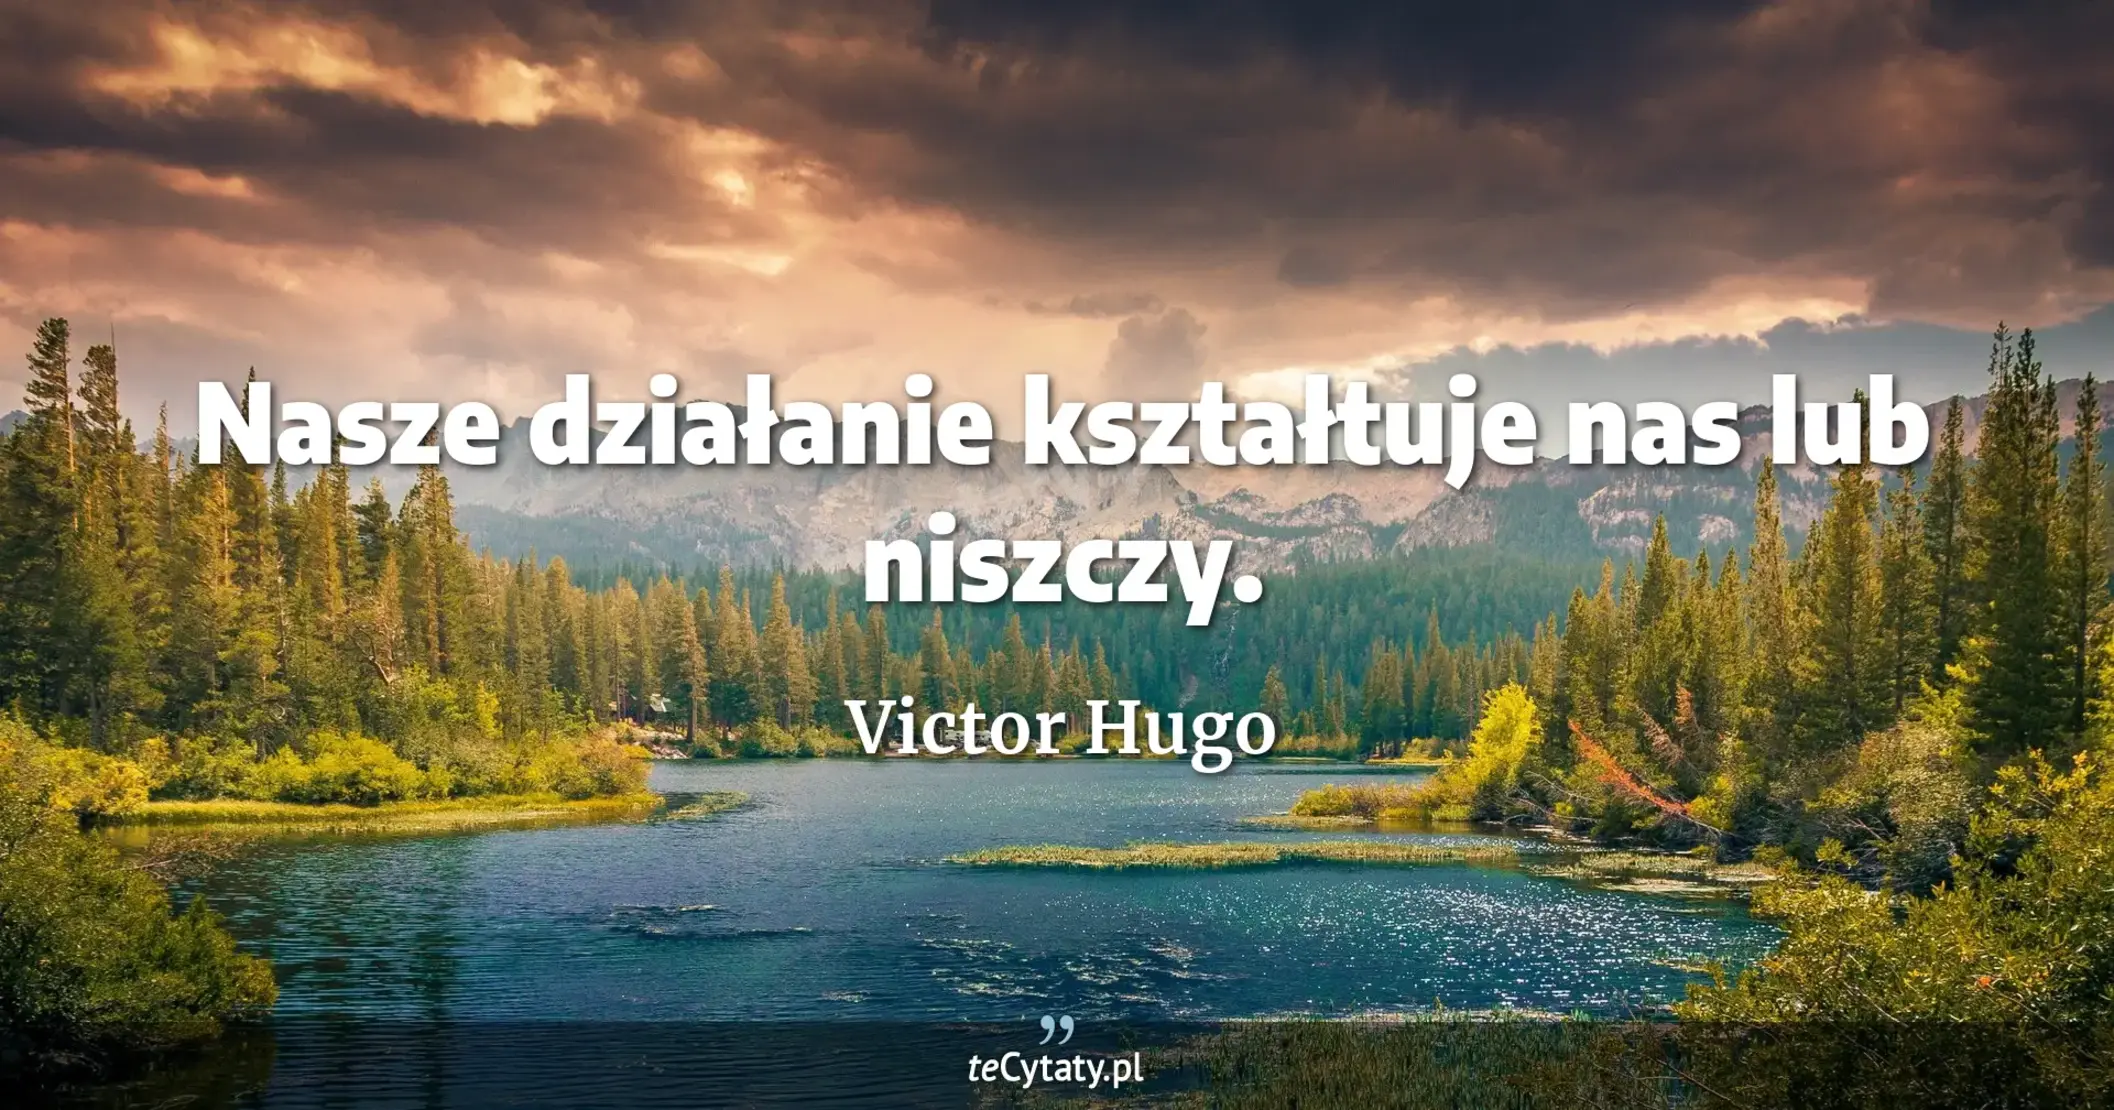 Nasze działanie kształtuje nas lub niszczy. - Victor Hugo